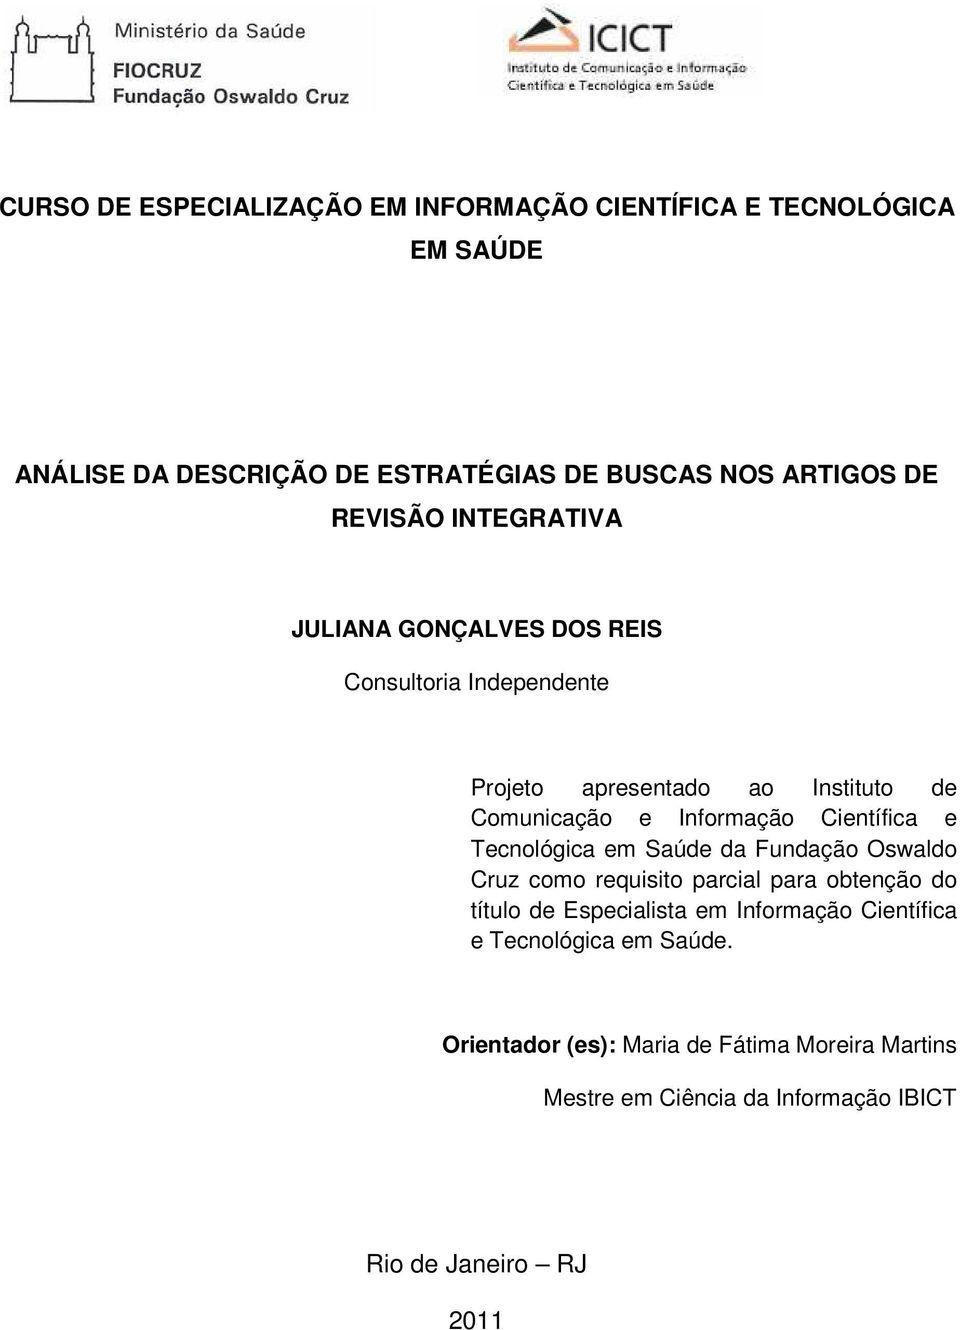 Científica e Tecnológica em Saúde da Fundação Oswaldo Cruz como requisito parcial para obtenção do título de Especialista em Informação